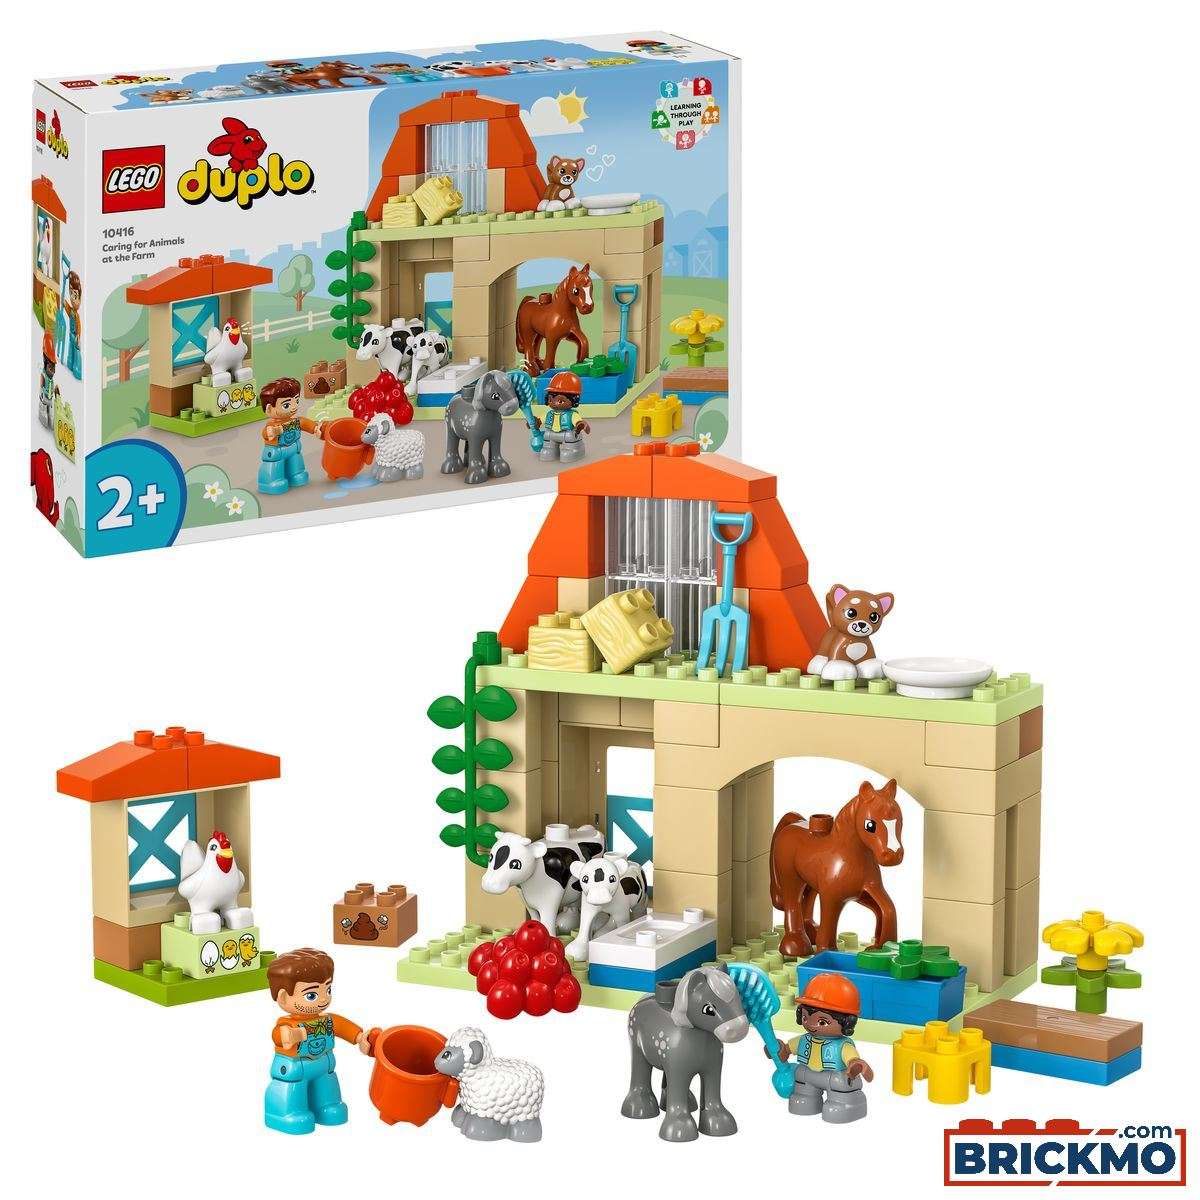 LEGO Duplo 10416 Starostlivosť o zvieratká na farme 10416